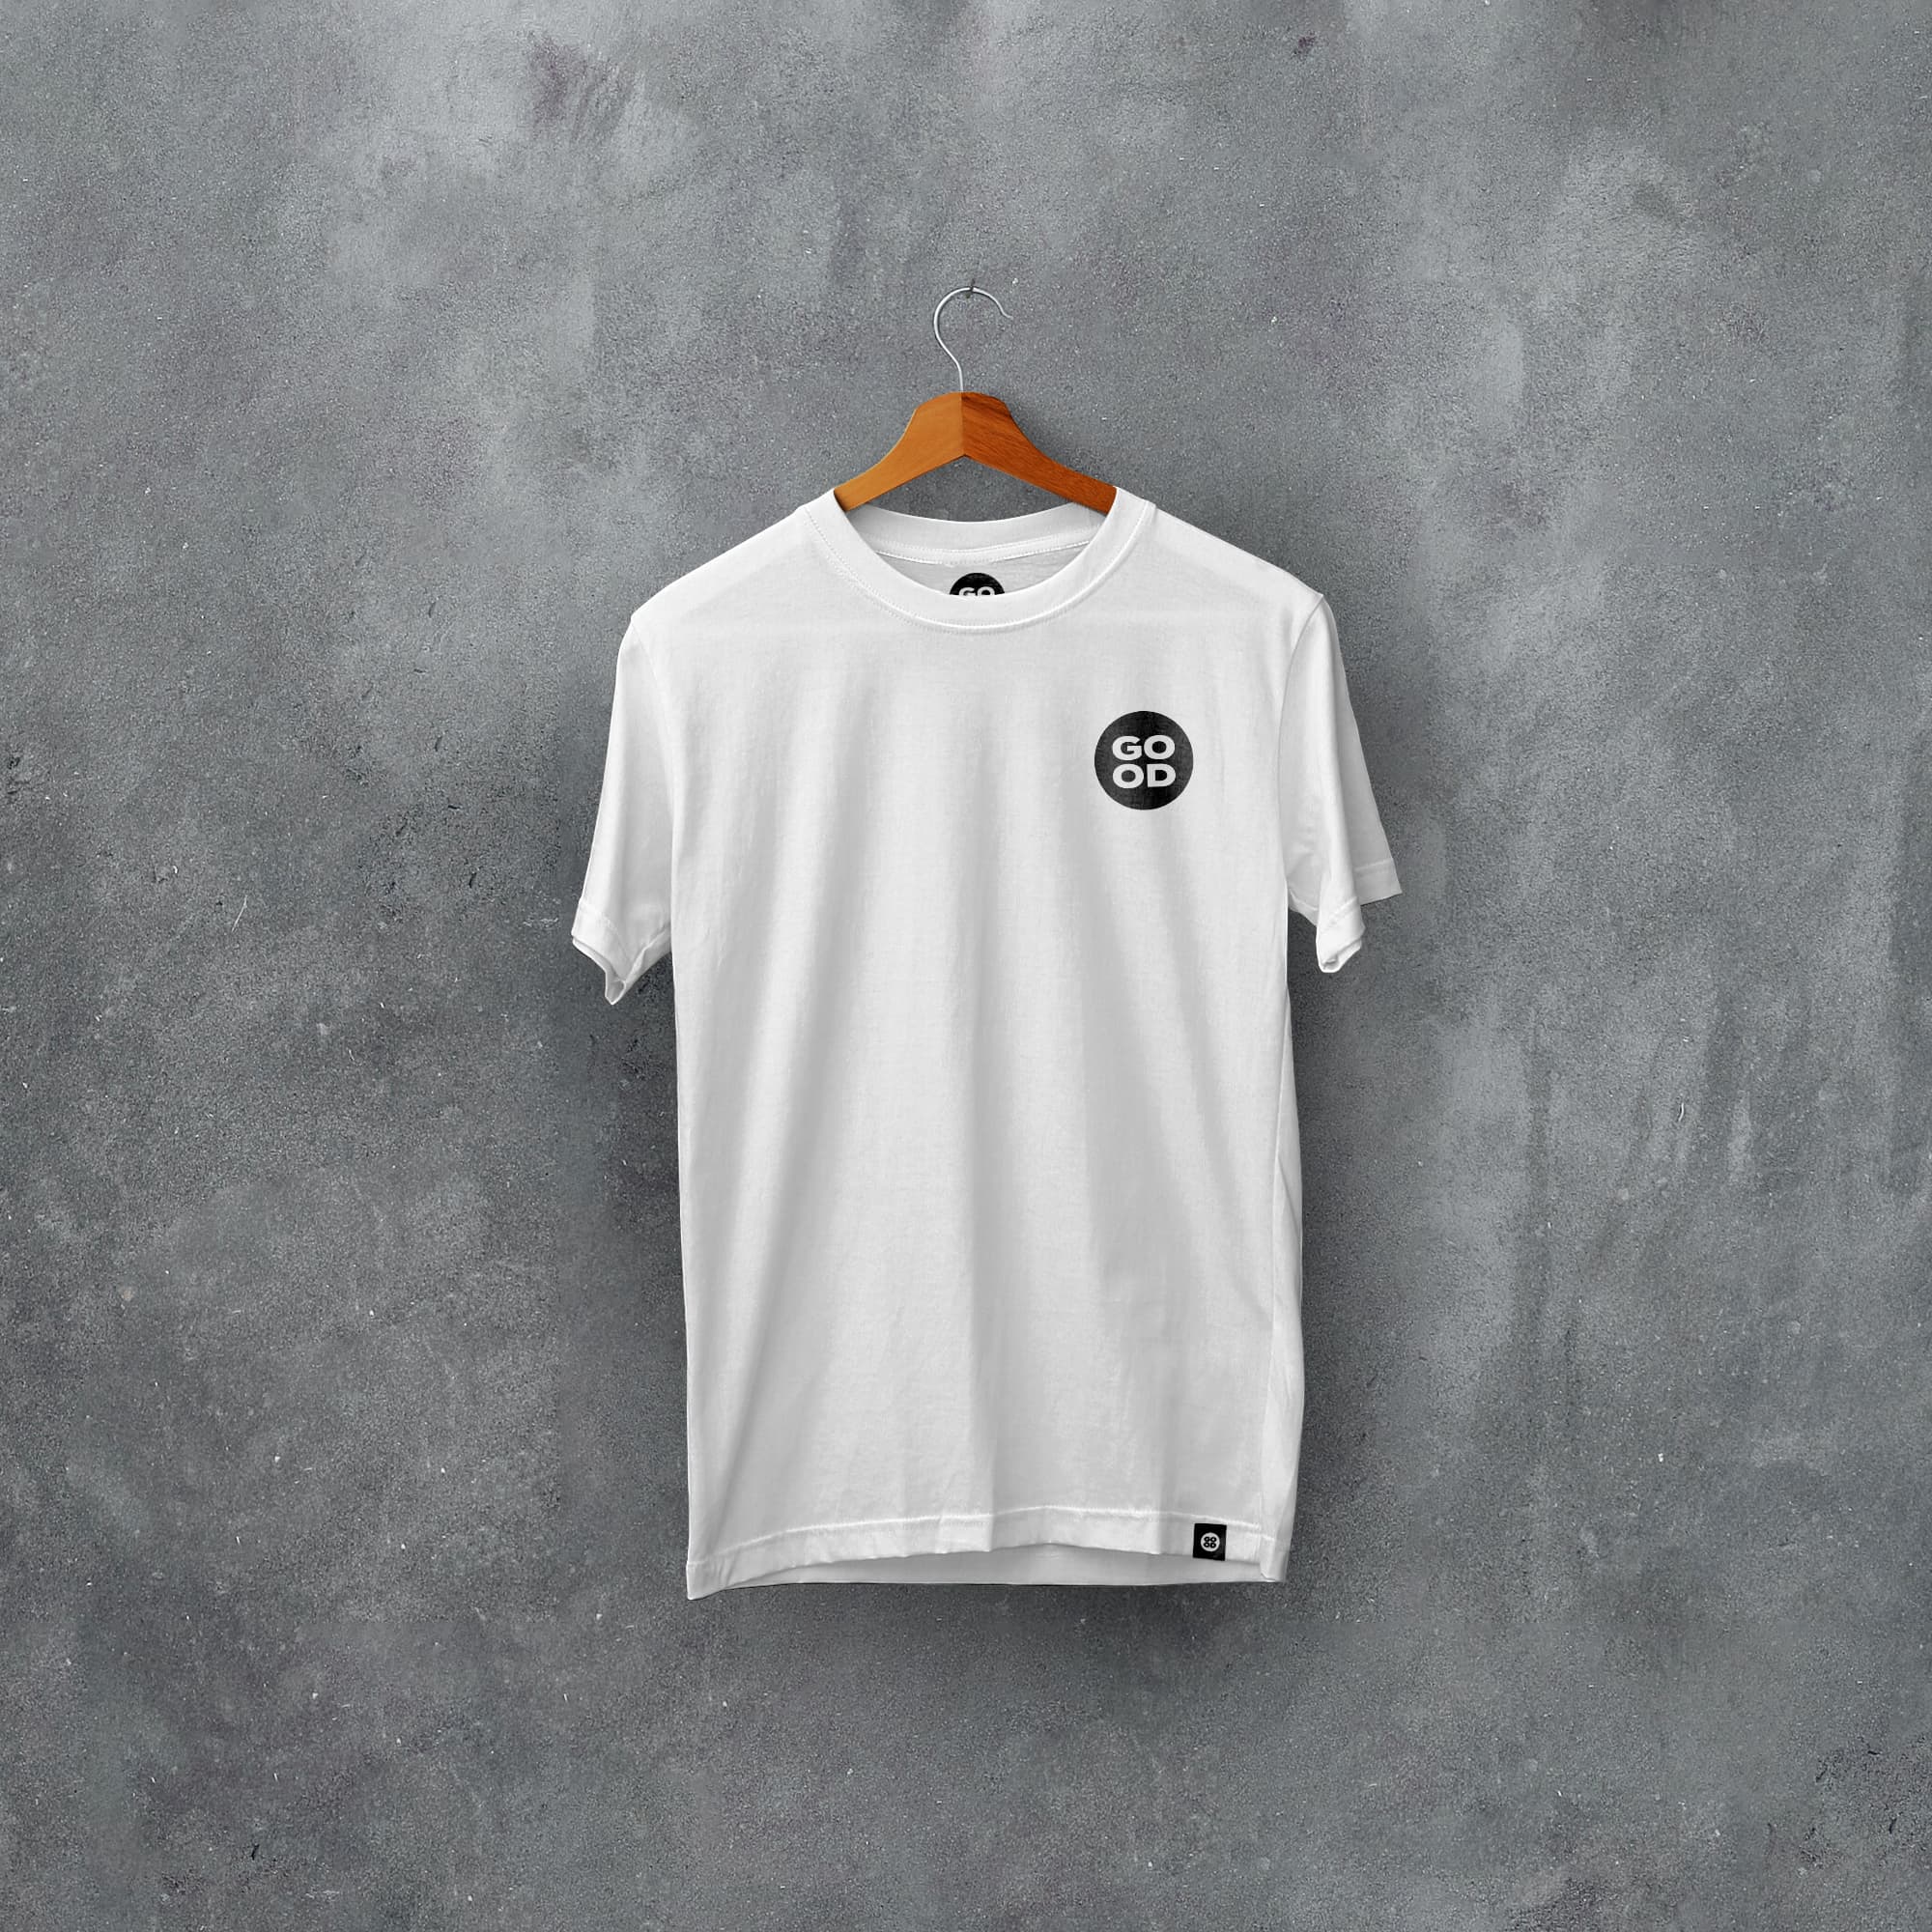 St Etienne Classic Kits Football T-Shirt